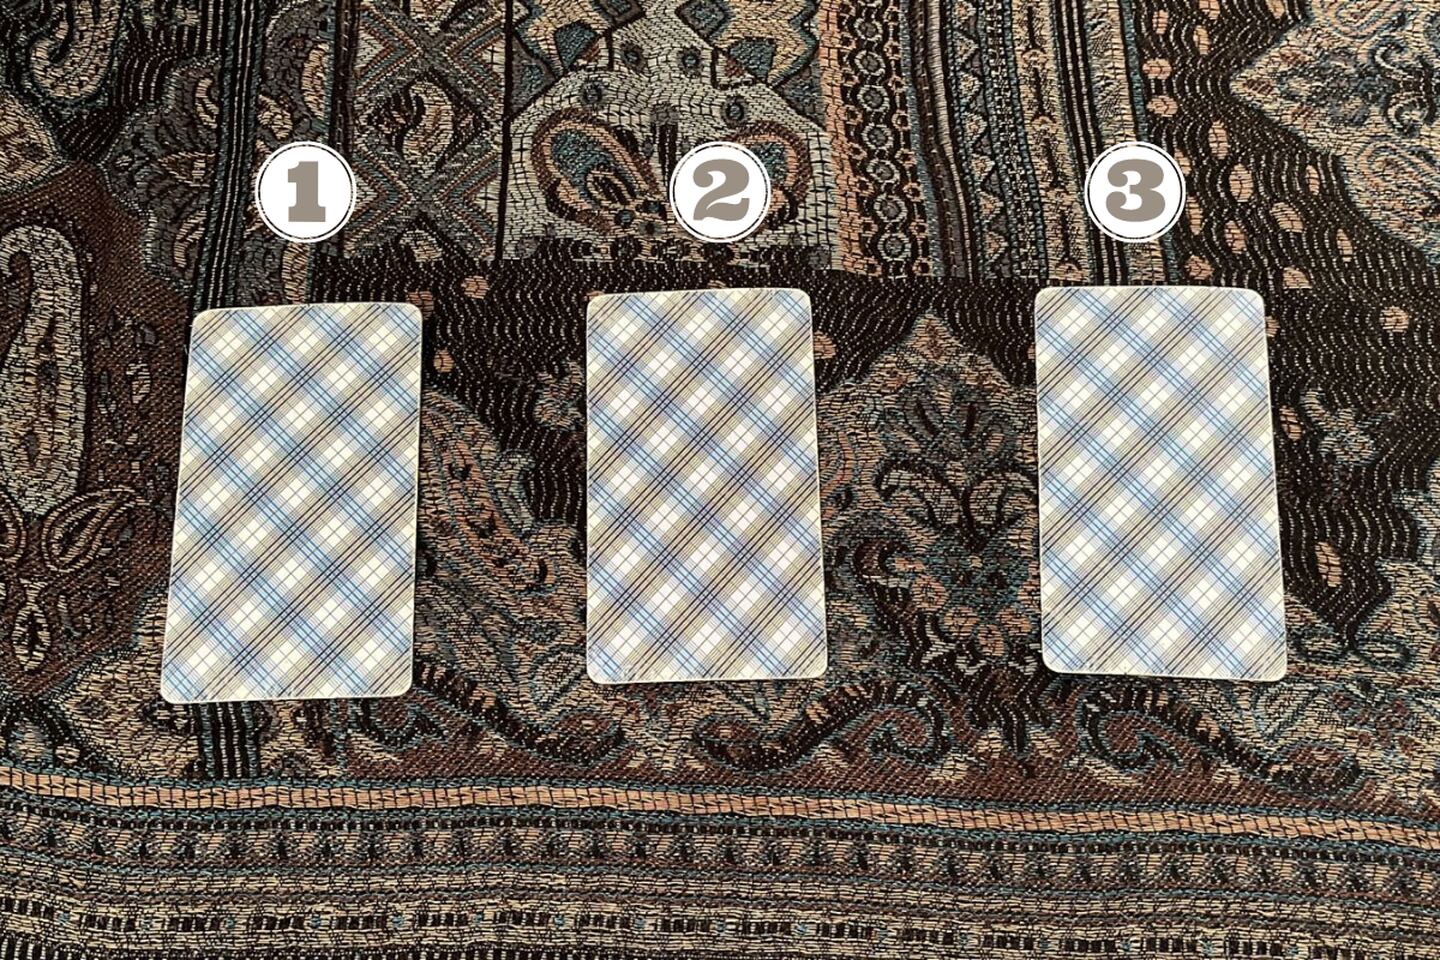 Tres cartas del Tarot ocultas encima de una tela.